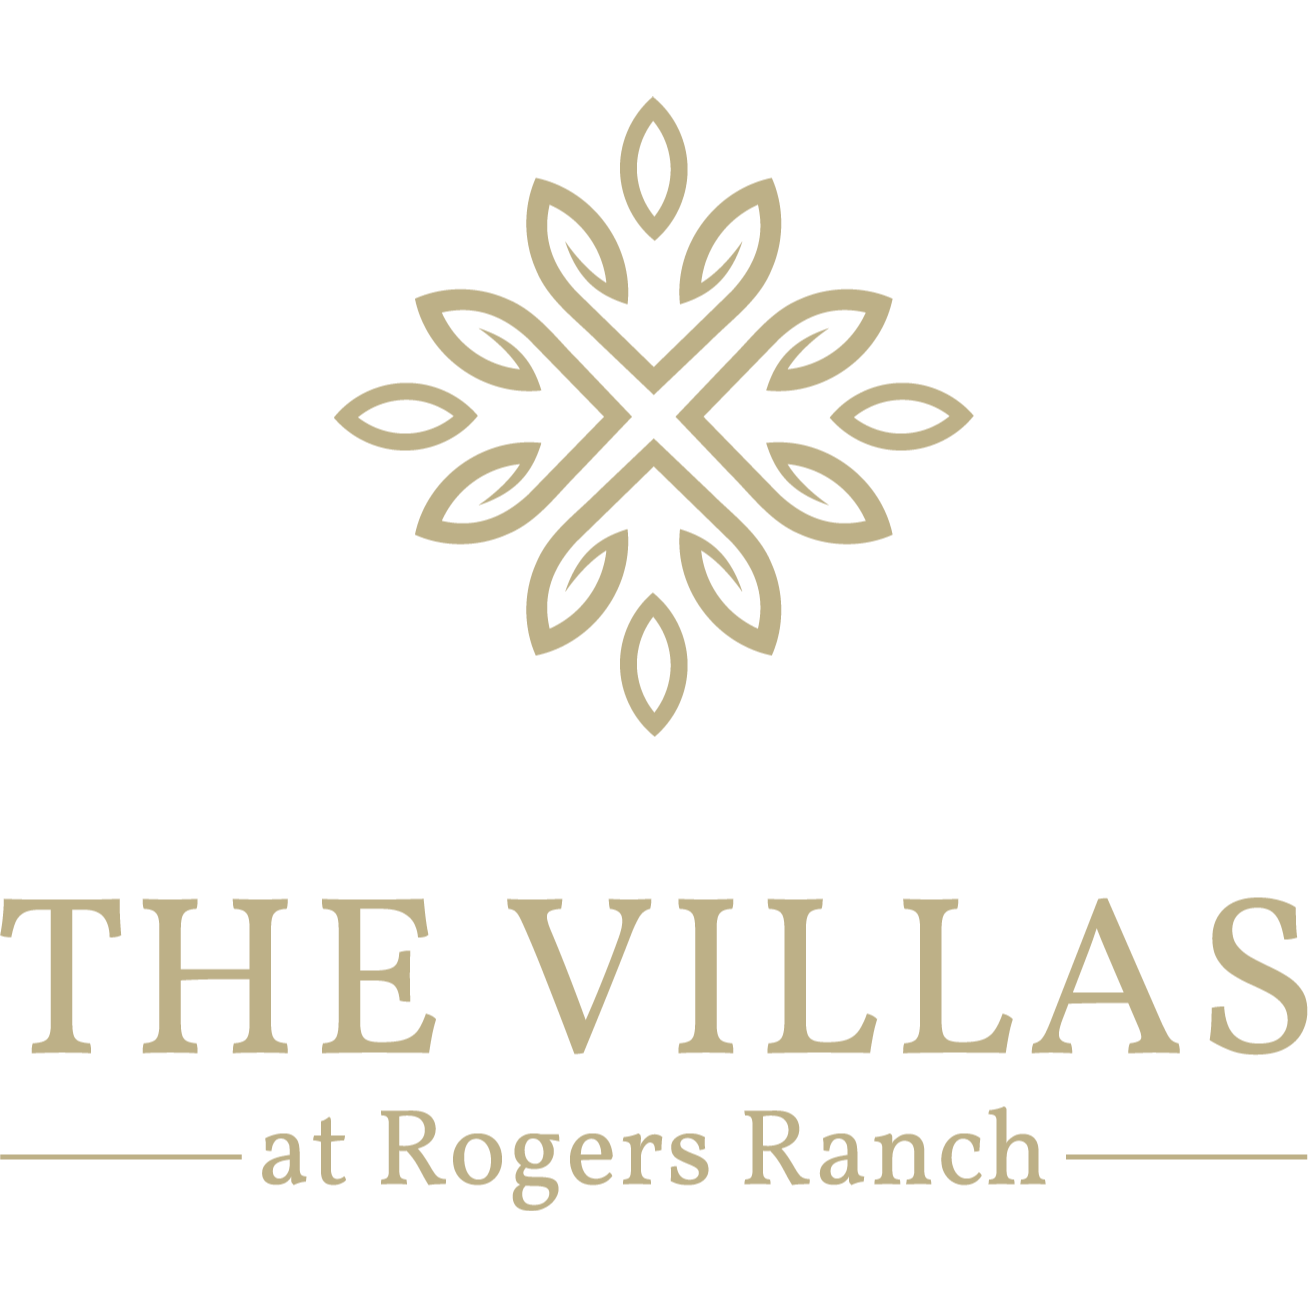 Villas at Rogers Ranch - San Antonio, TX 78258 - (844)207-5676 | ShowMeLocal.com